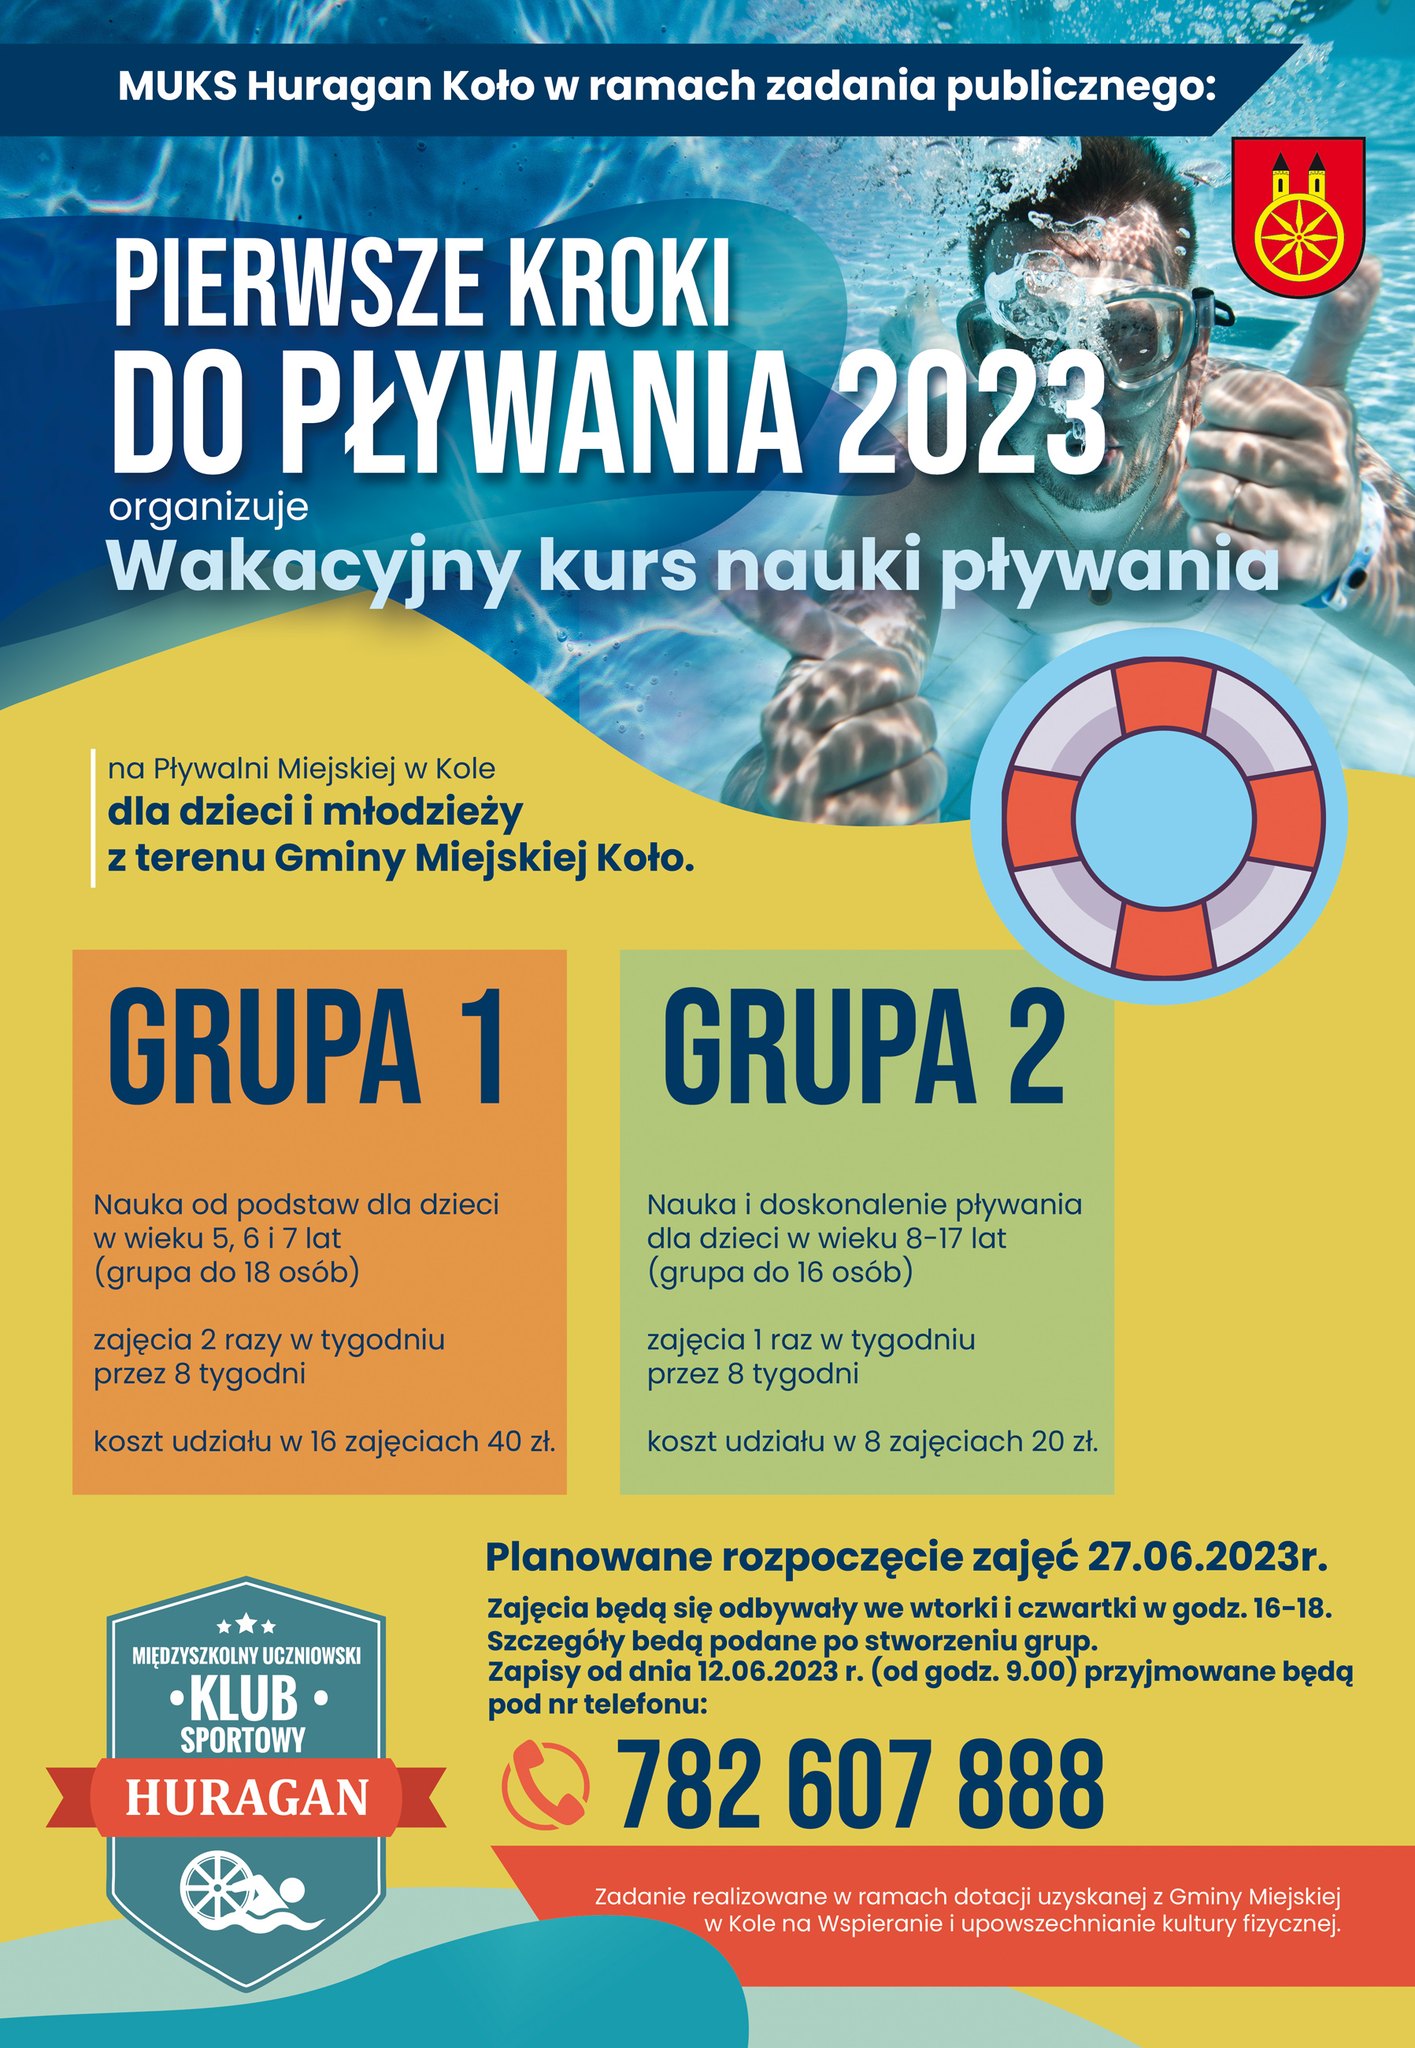 Plakat Wakacyjny kurs PIERWSZE KROKI DO PŁYWANIA 2023, tekst pod plakatem